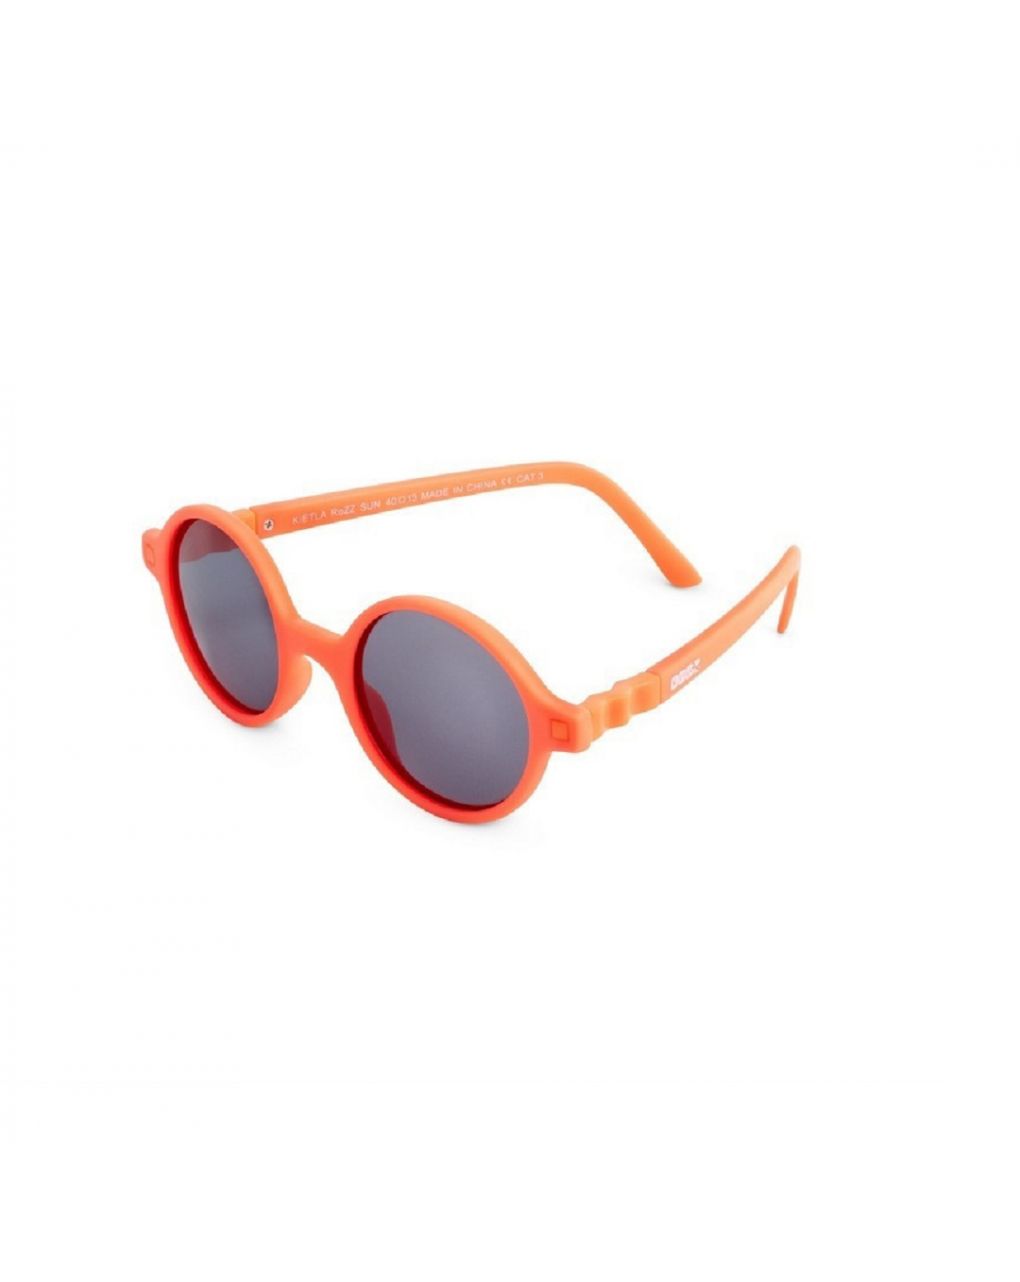 Kietla γυαλιά ηλίου 4-6 ετών rozz fluo orange - kietla